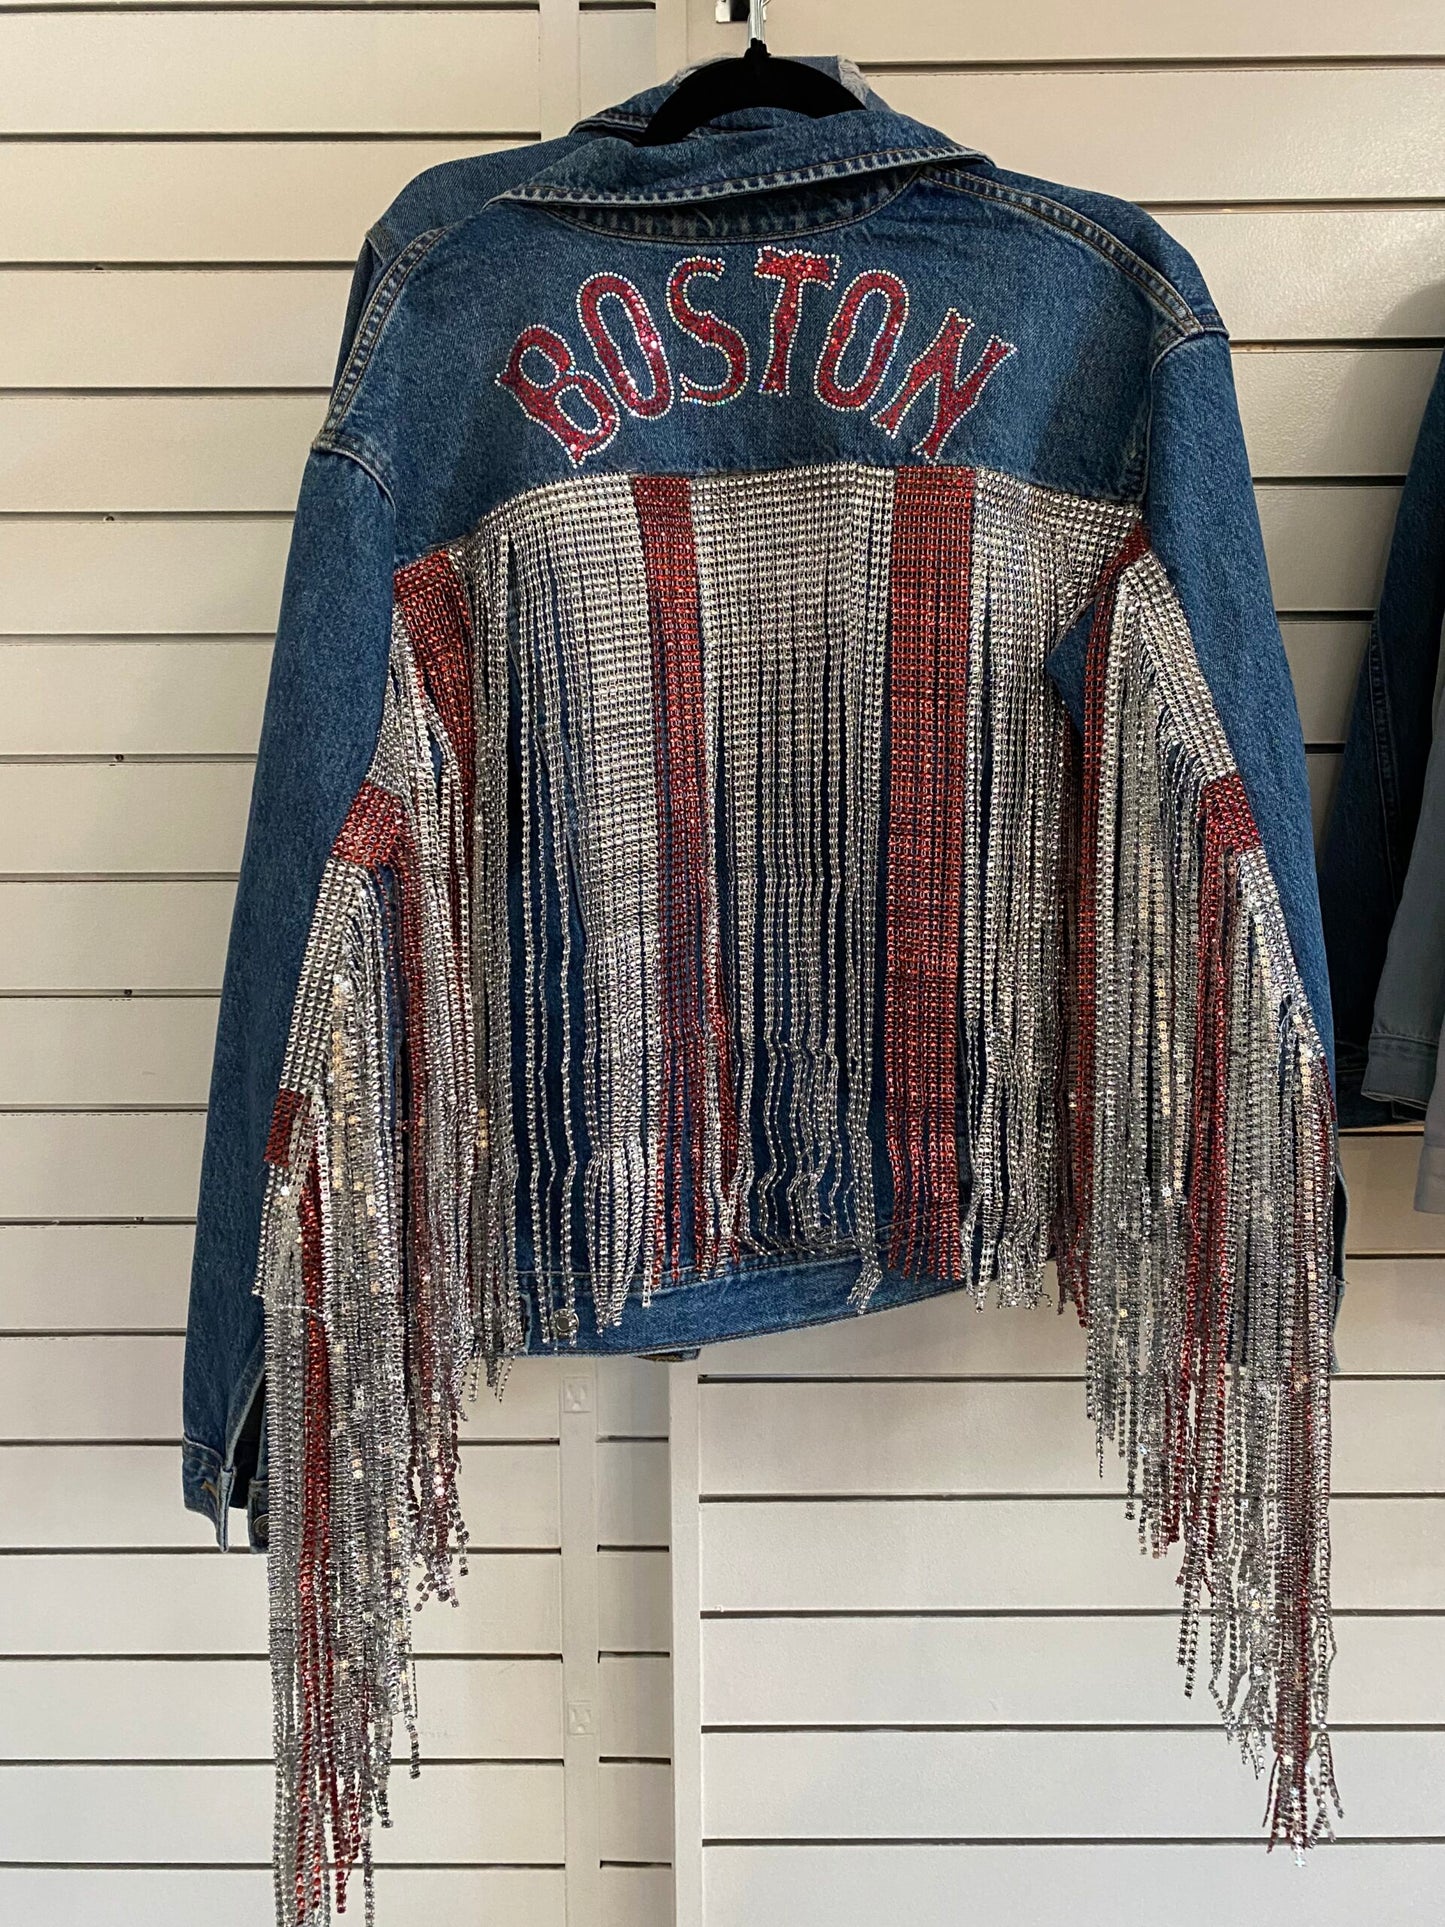 Boston Fringe Jacket